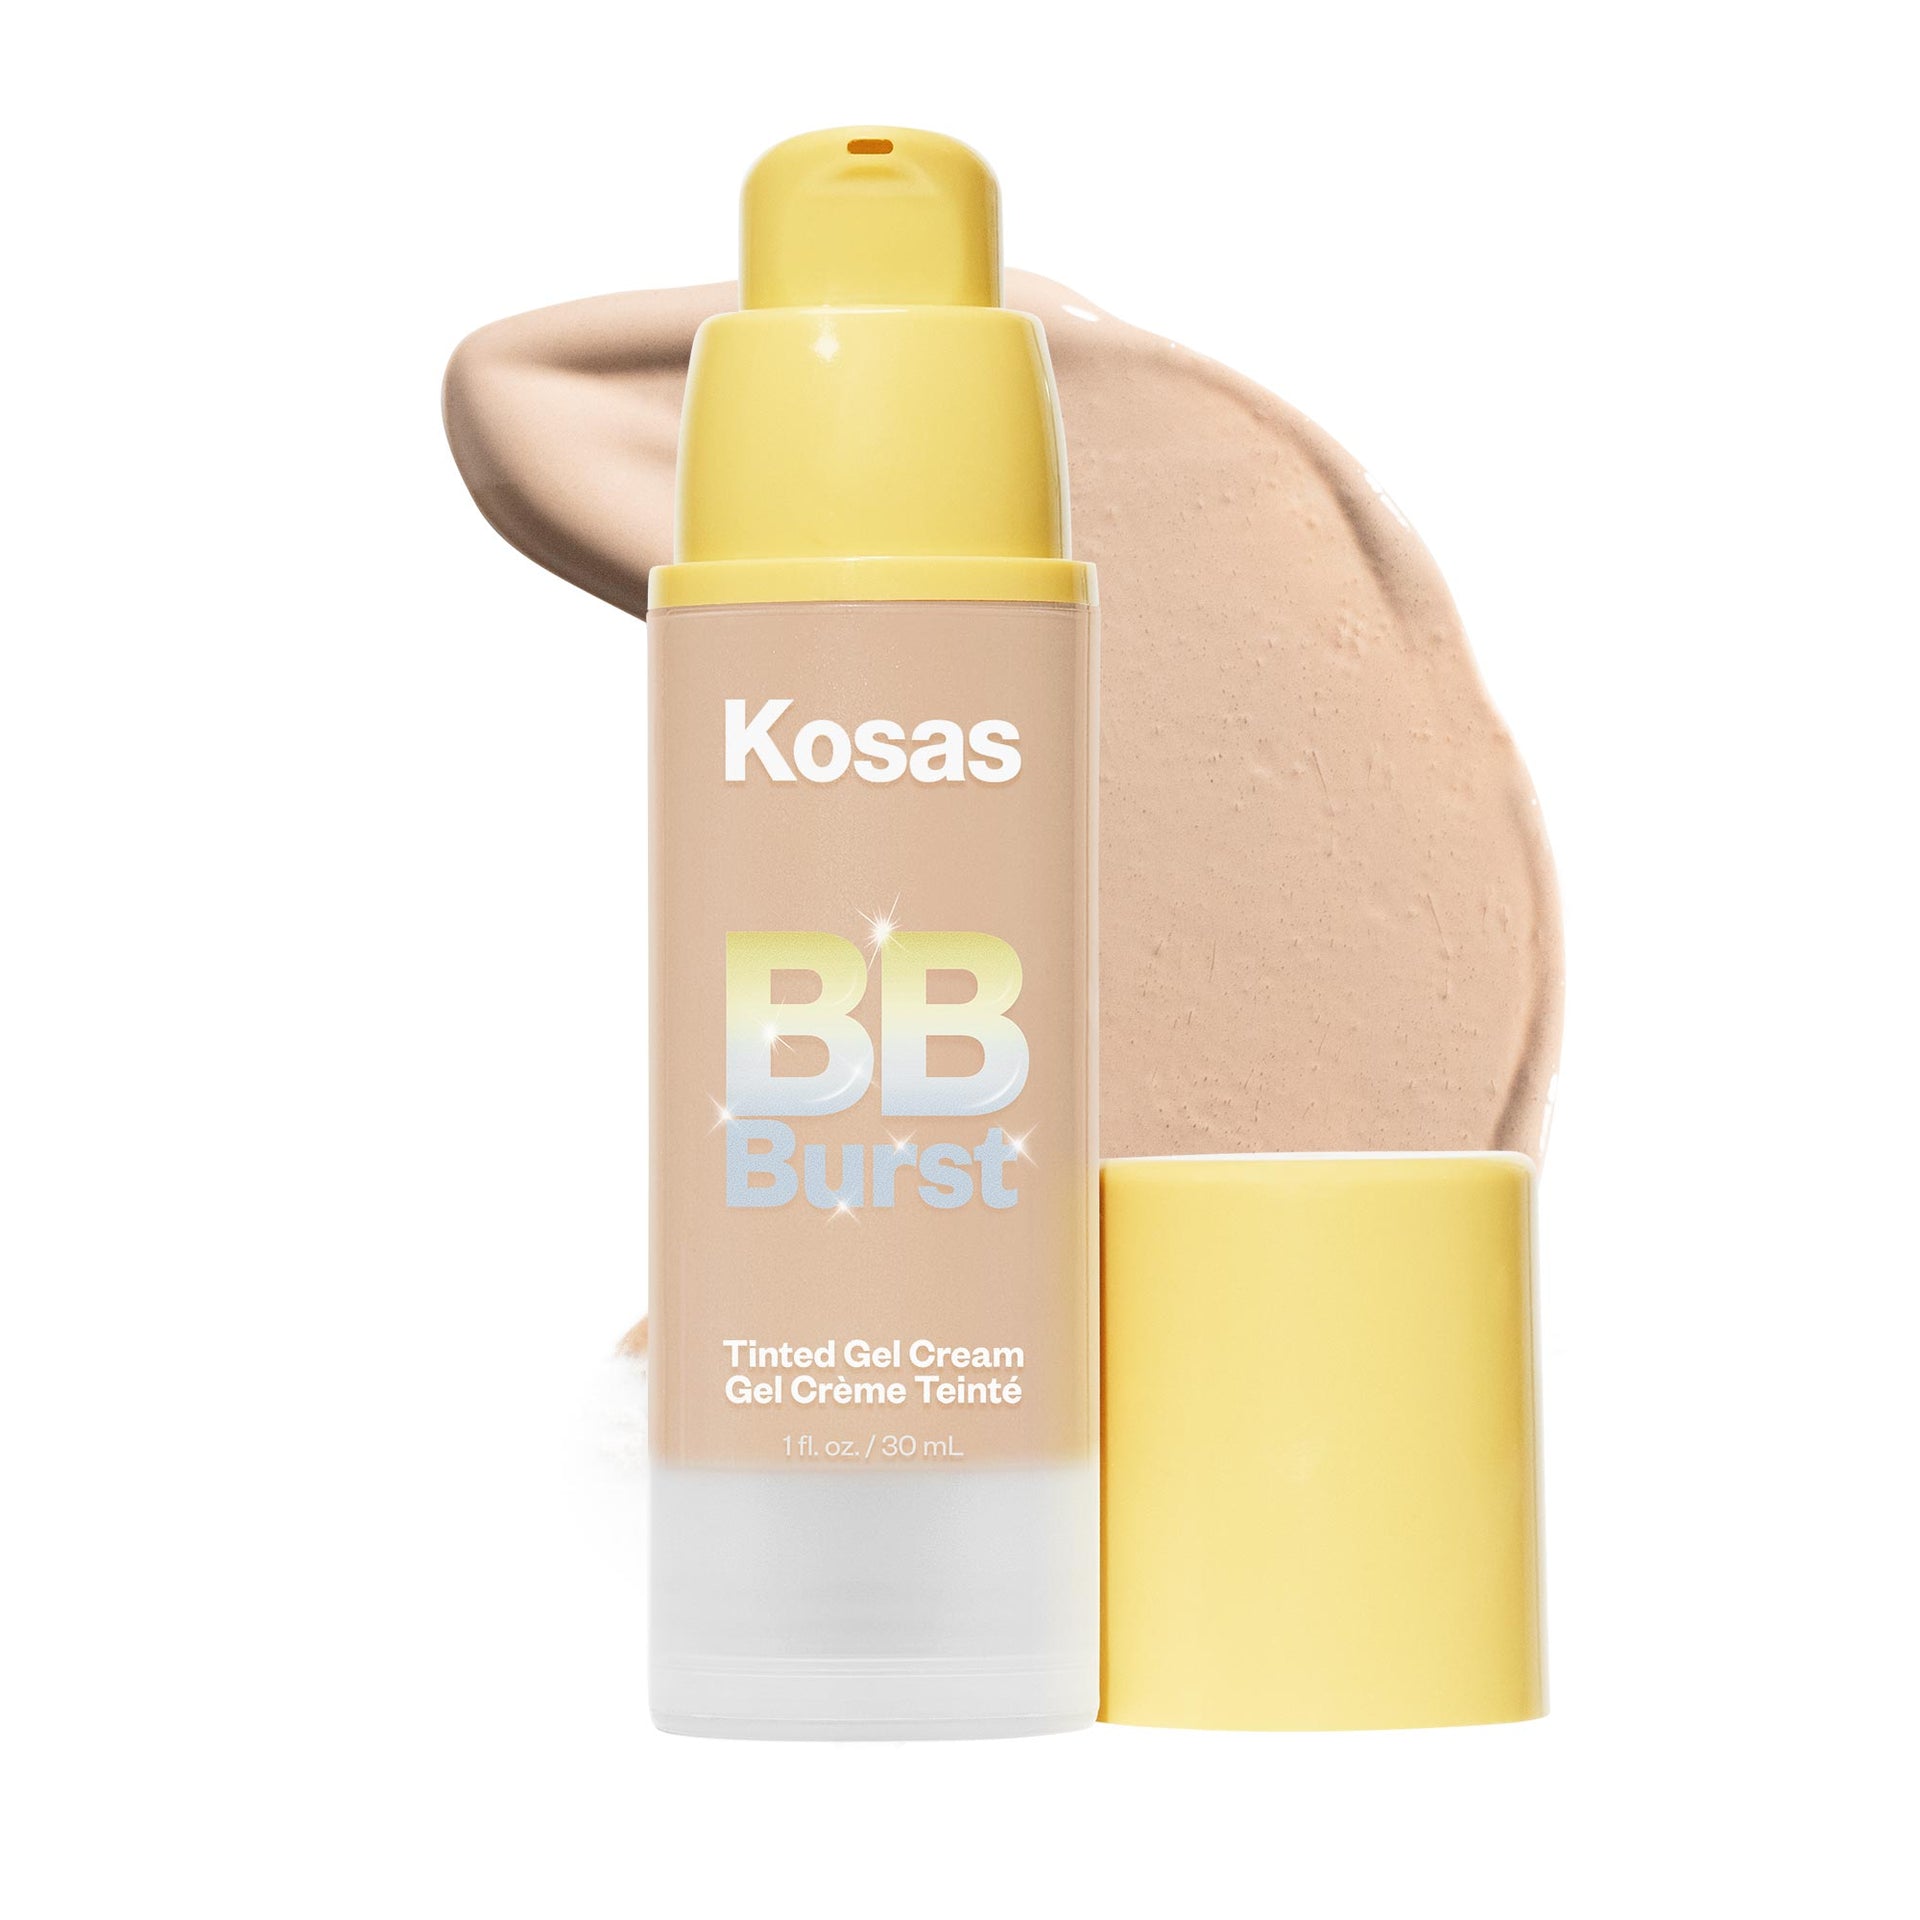 Kosas BB Burst in the shade Light Medium Neutral Warm 20